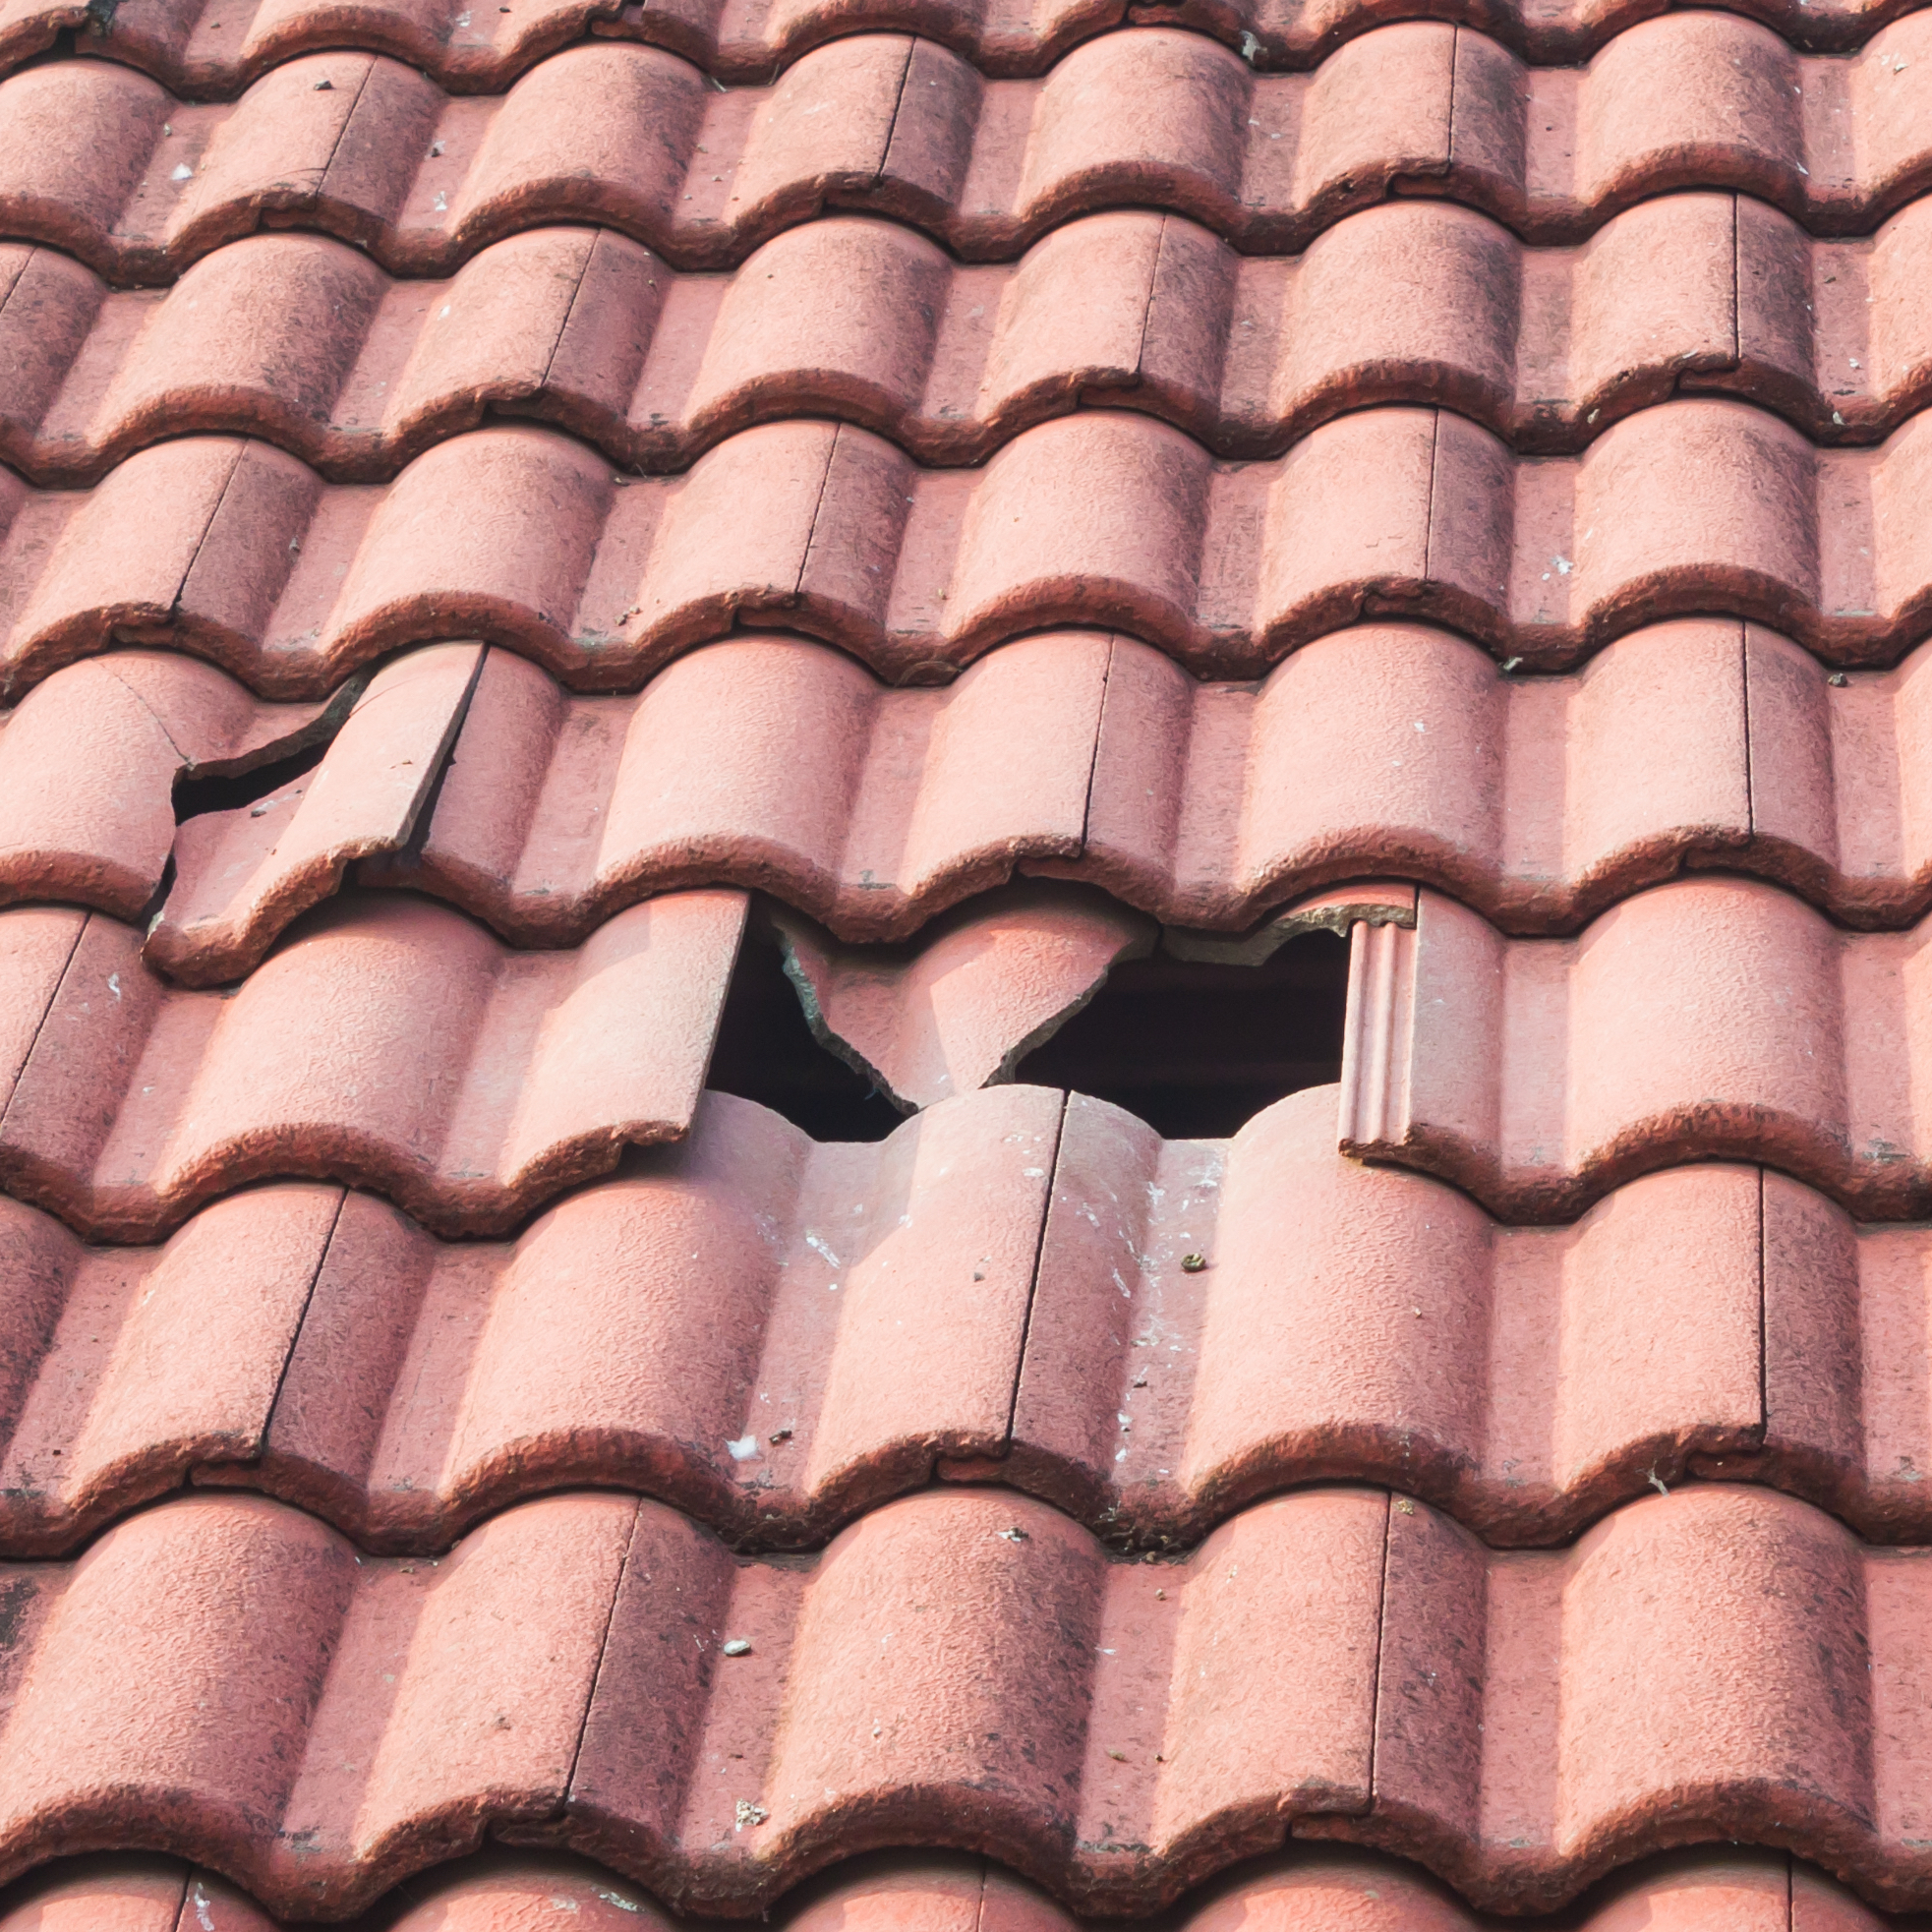 broken monier tiles roof